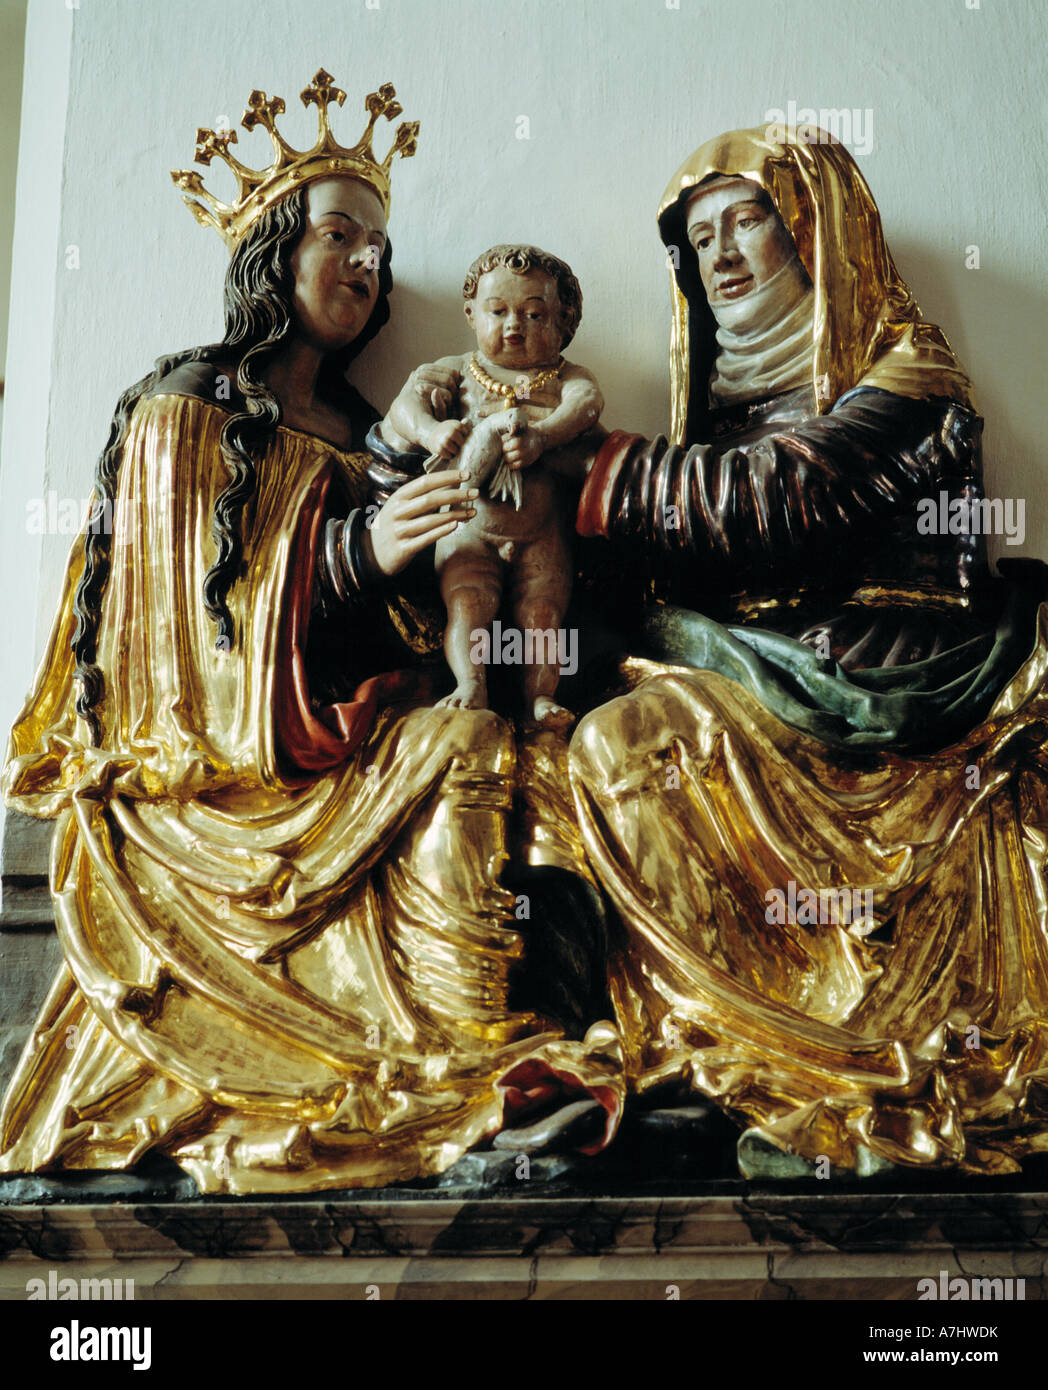 Heiligenfiguren in der Pfarrkirche Sankt Johannes Baptist in Velburg, Oberpfaelzer Jura, Fraenkische Alb, Oberpfalz, Bayern Stock Photo